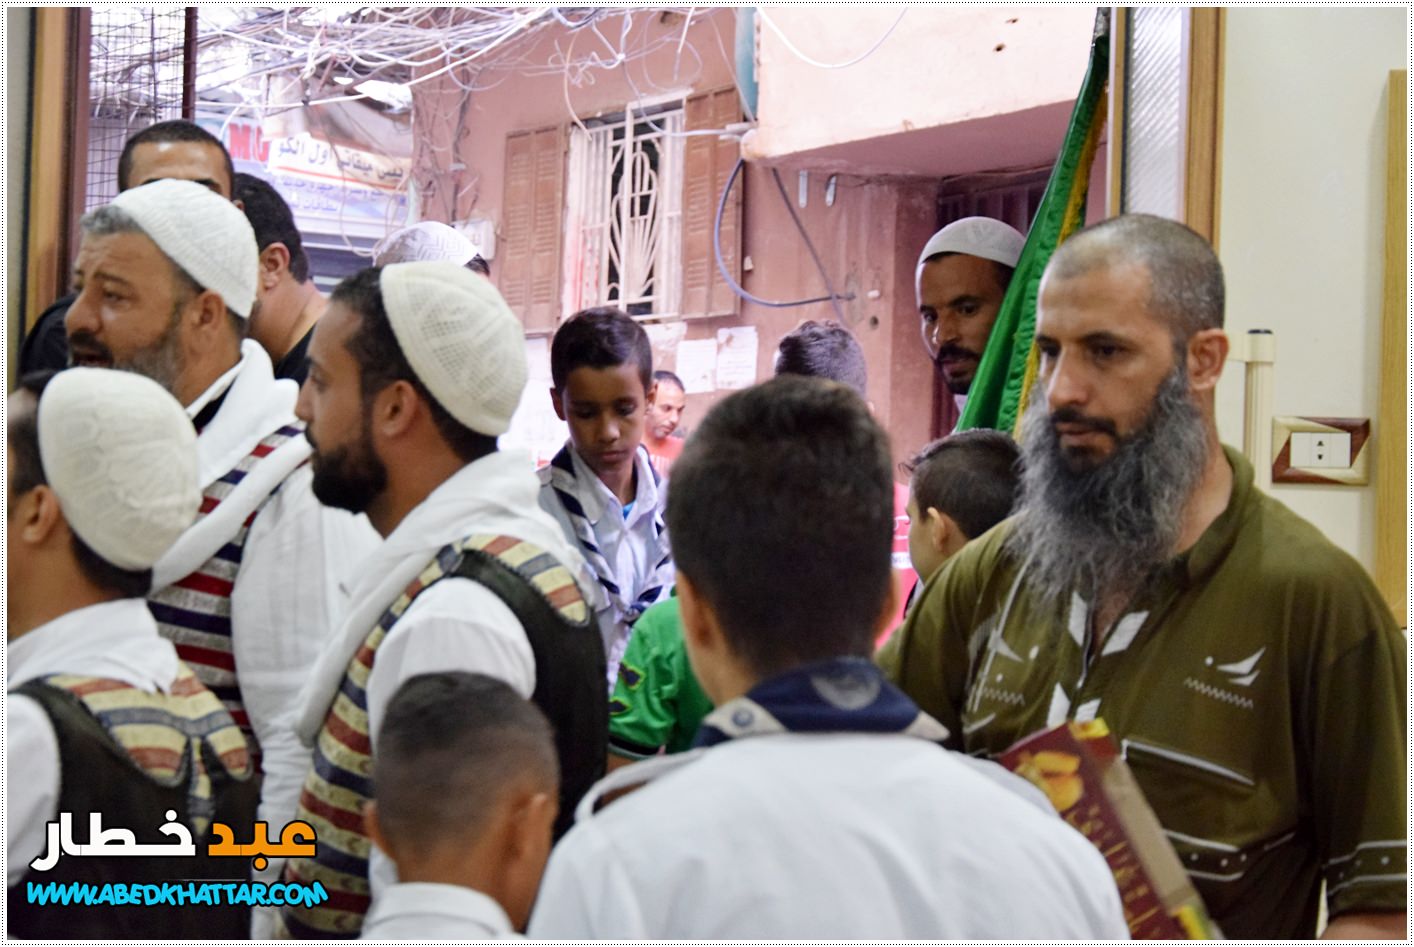 احتفال تكريم حجاج بيت الله الحرام في مخيم البداوي تحت رعاية اللجنة الشعبية ولجنة رعاية المساجد